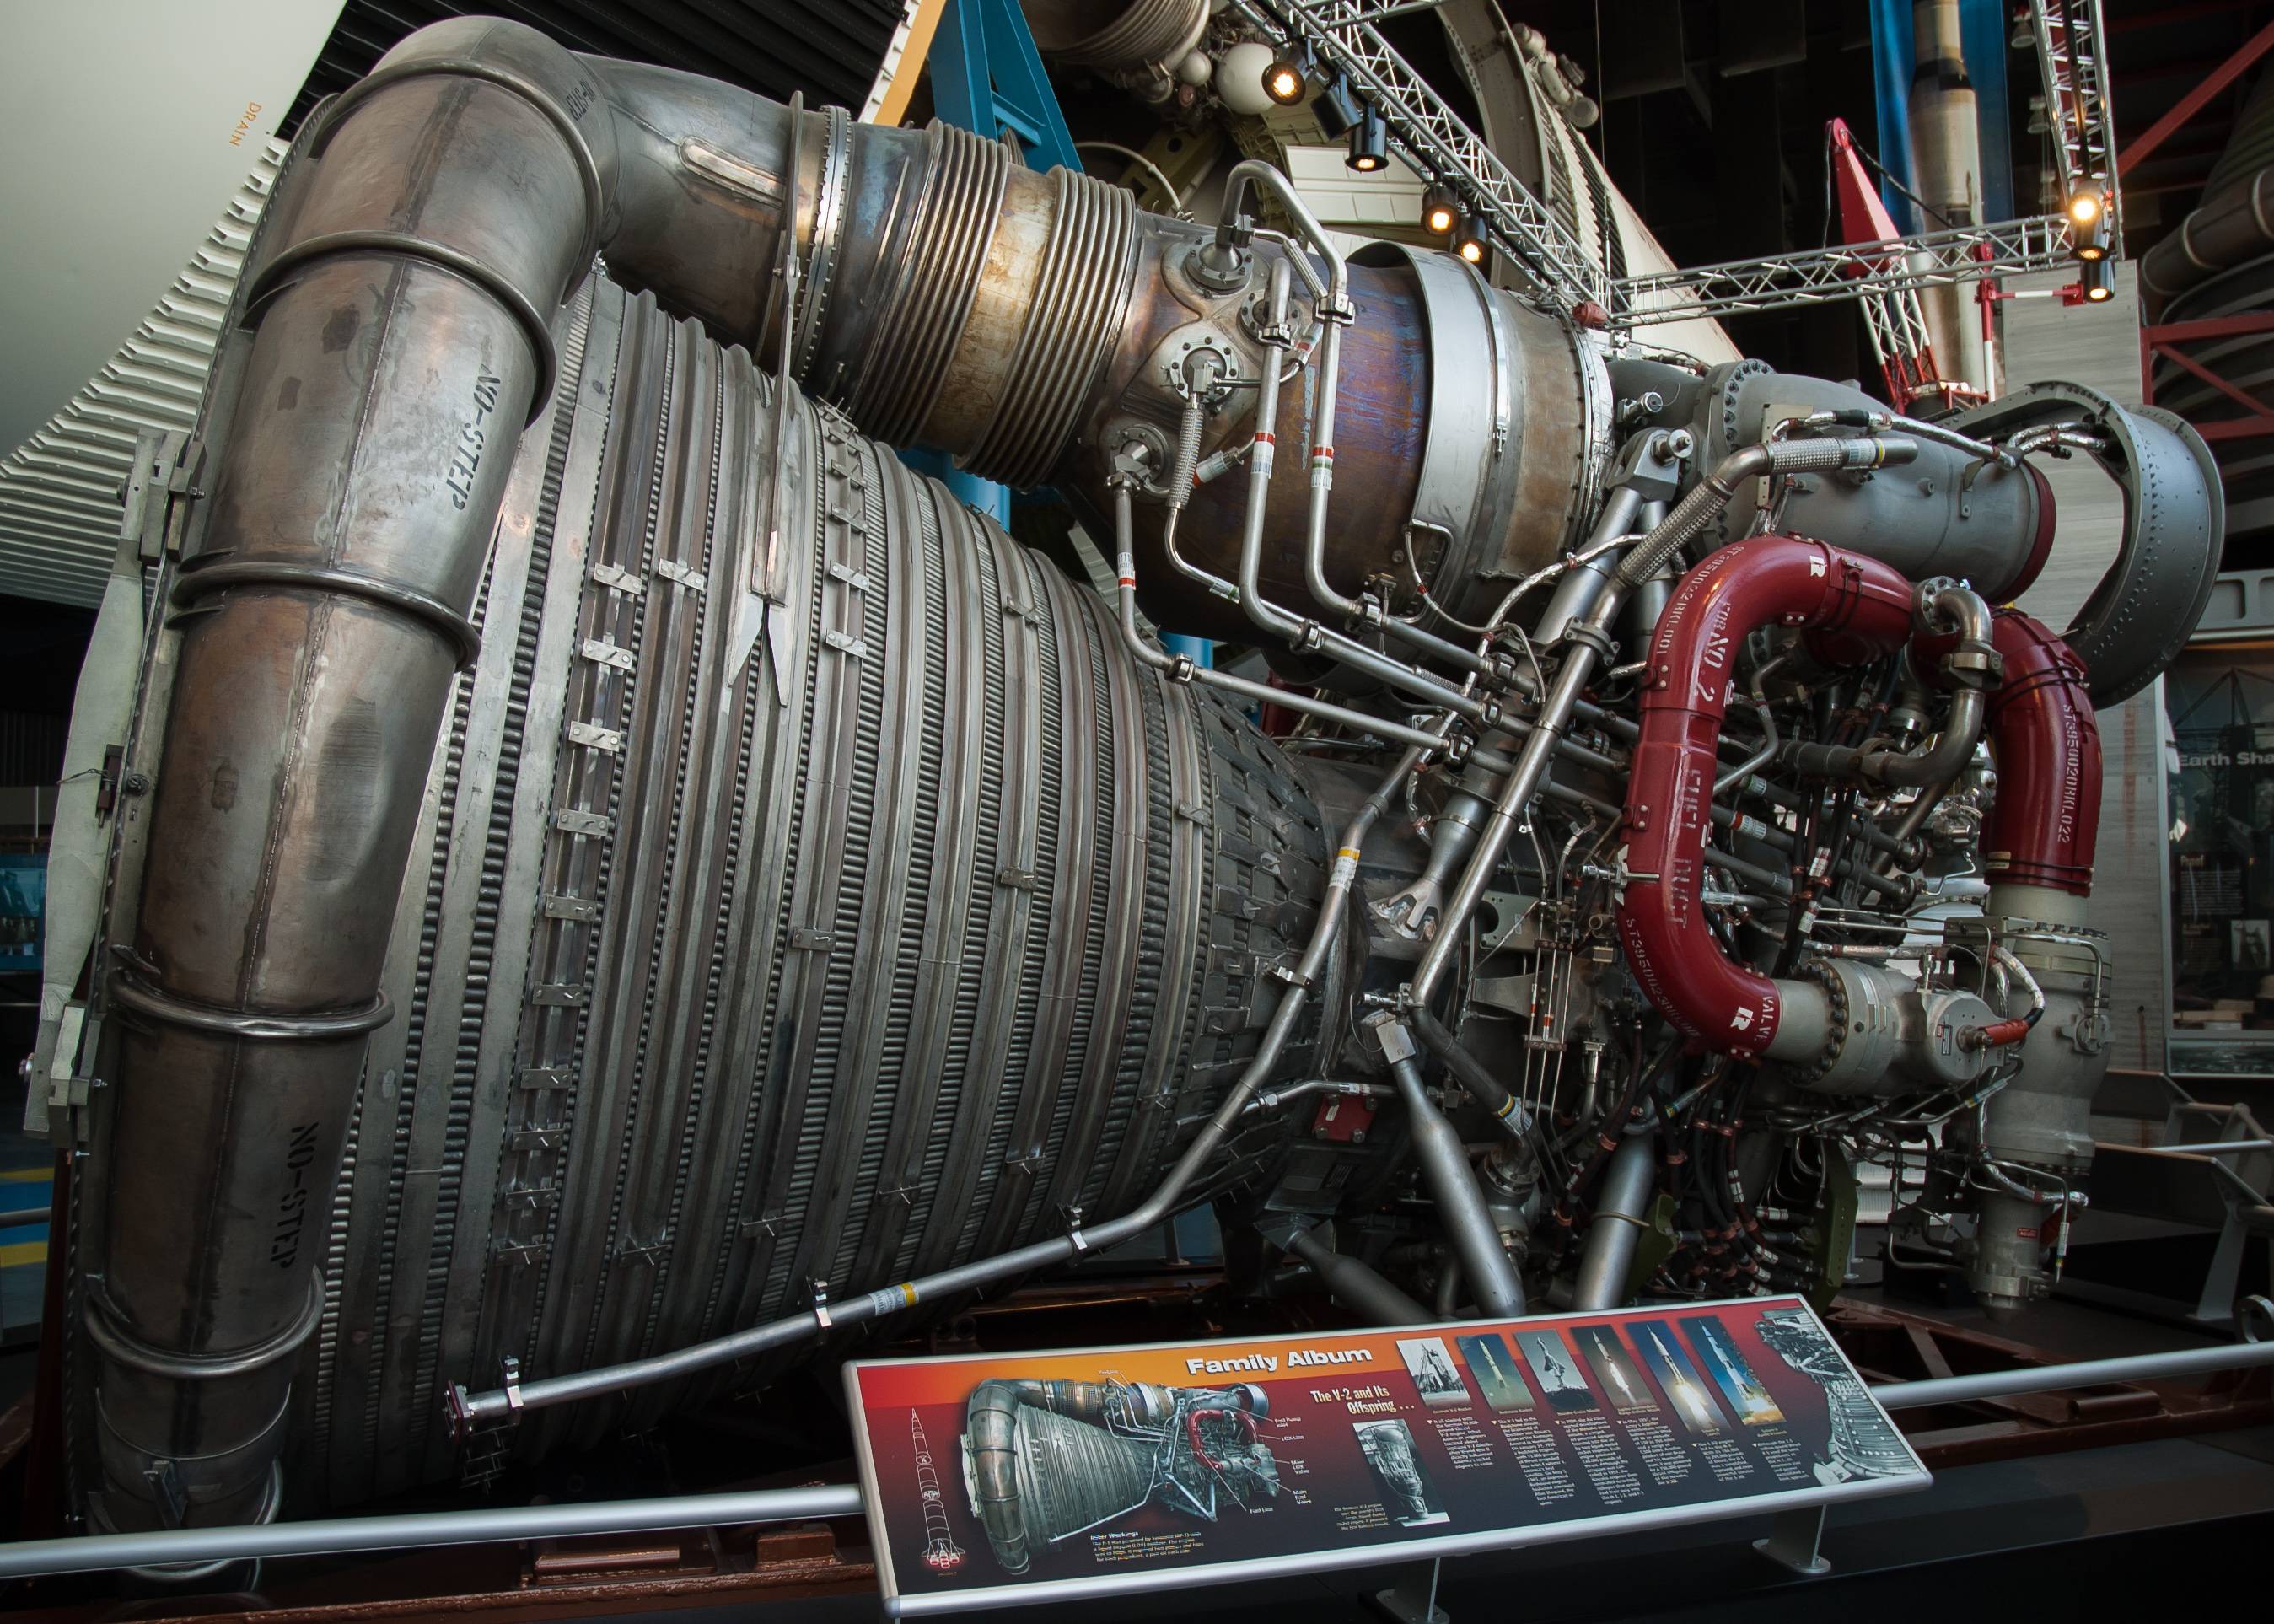 F-1 rocket engine used in the Saturn V program